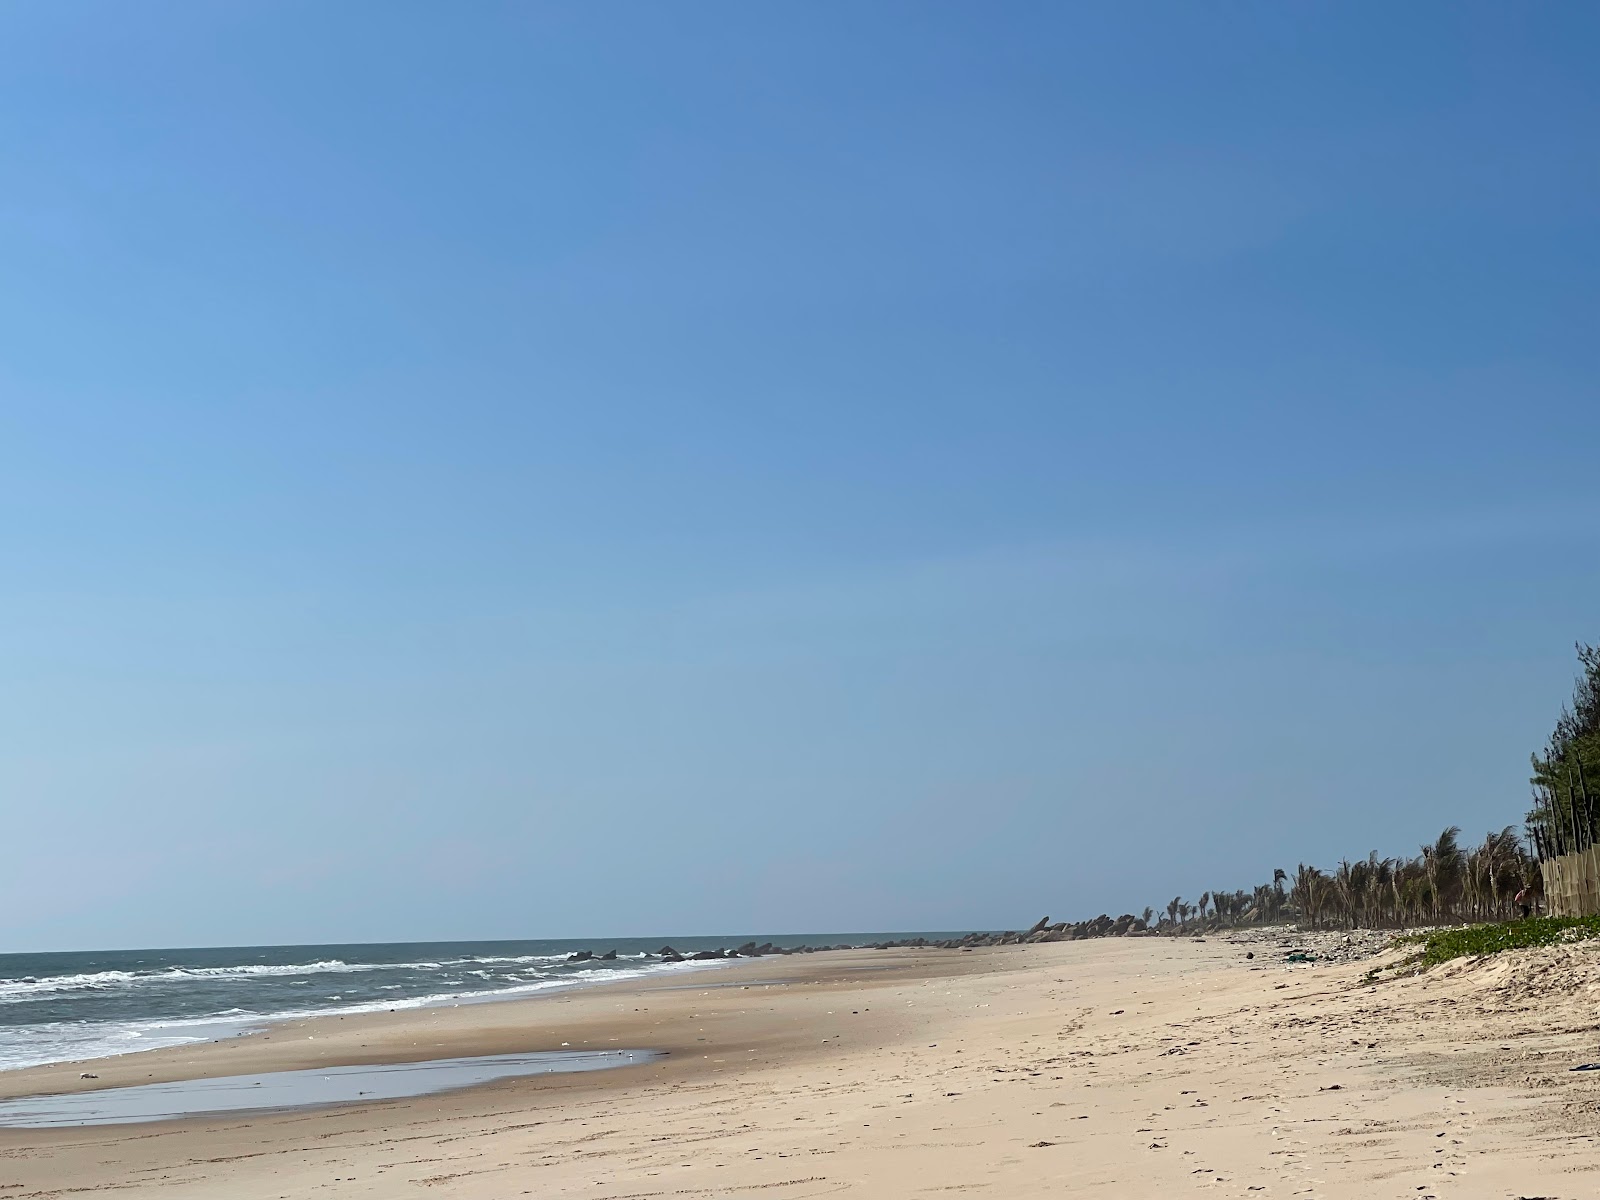 Photo de Pho Hien beach - endroit populaire parmi les connaisseurs de la détente